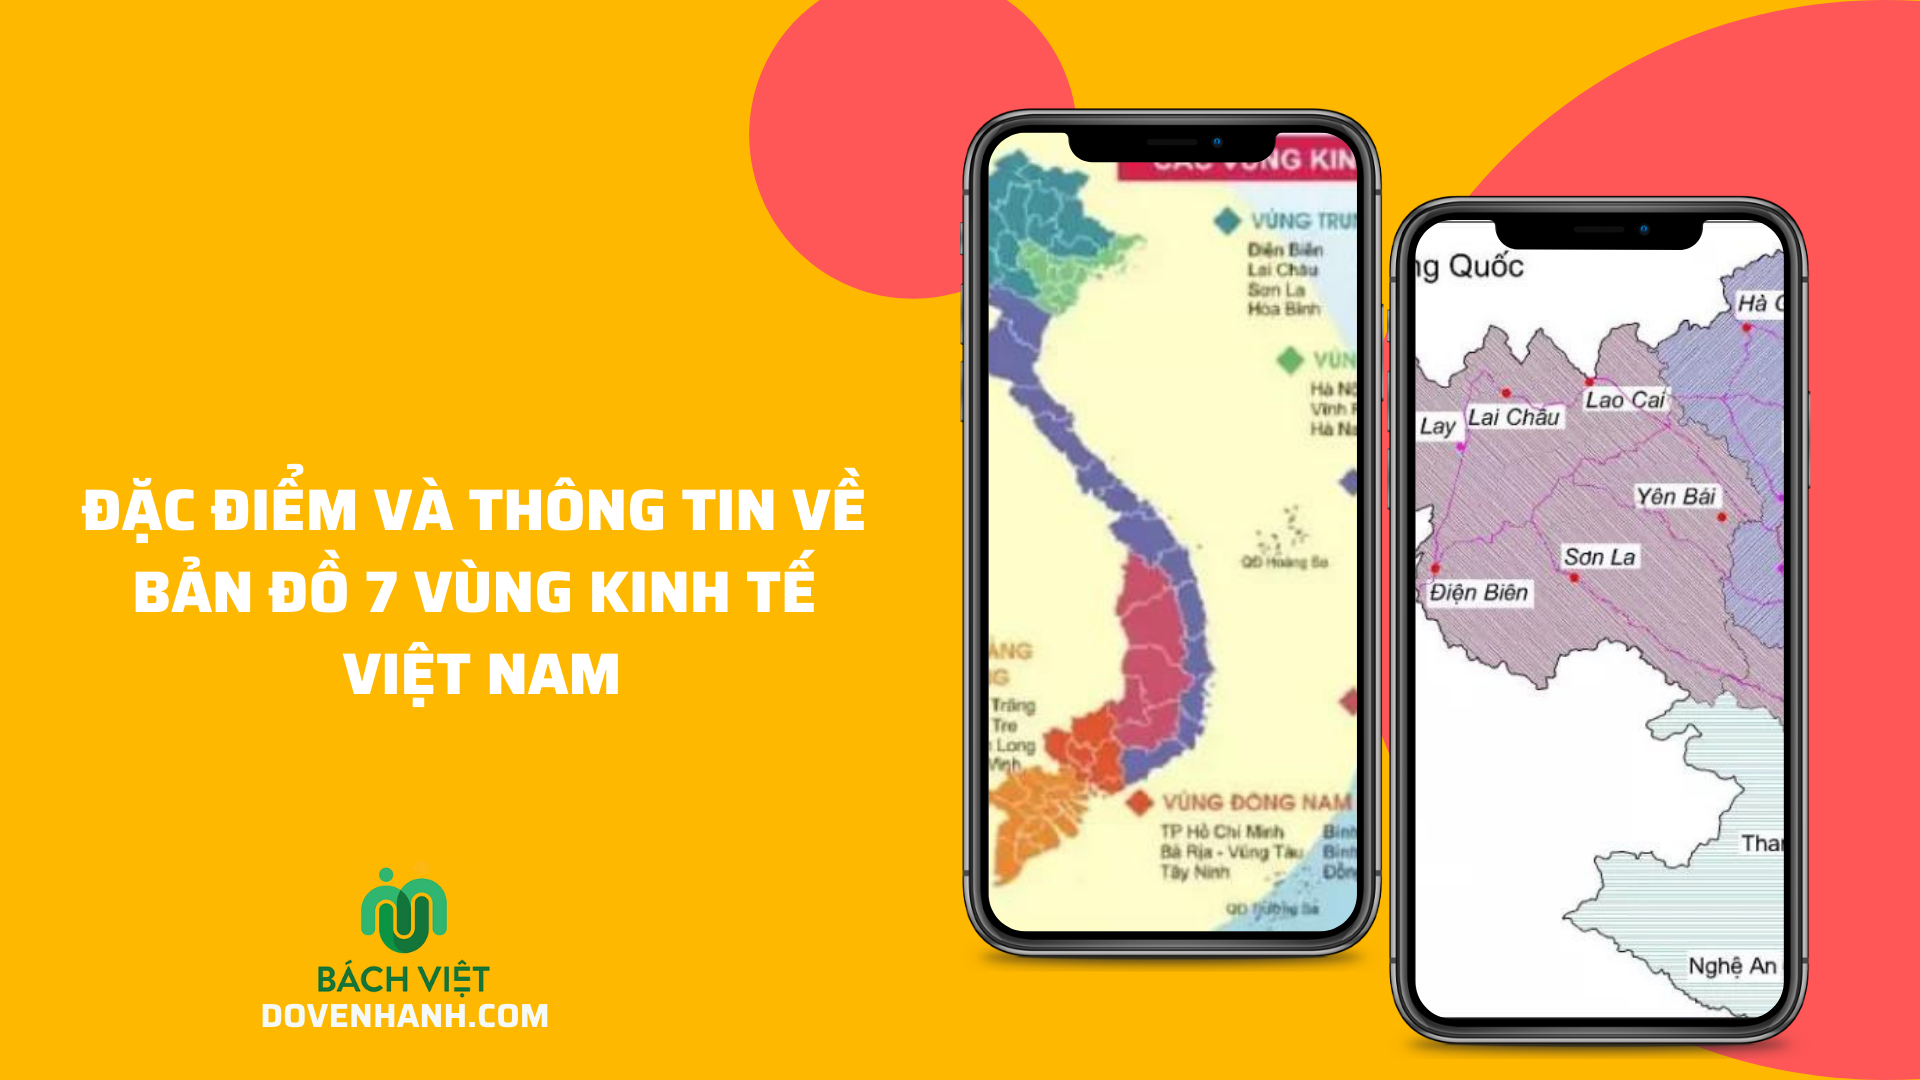 Đặc điểm và thông tin về bản đồ 7 vùng kinh tế Việt Nam